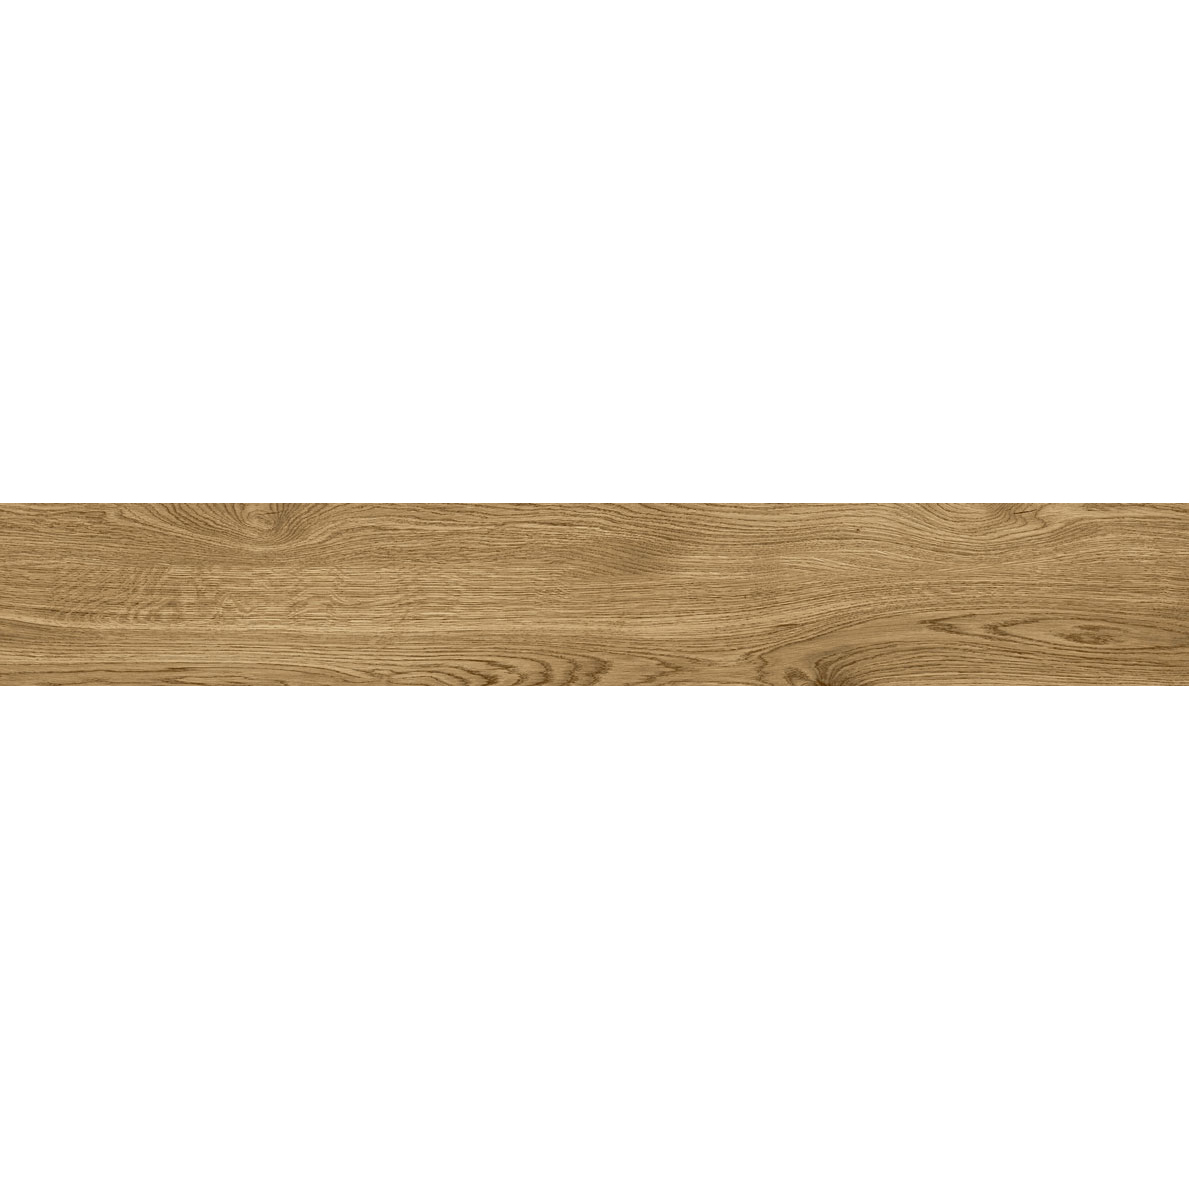 Płytka podłogowa deskopodobna Tubądzin Wood Pile natural STR 149,8x23 cm